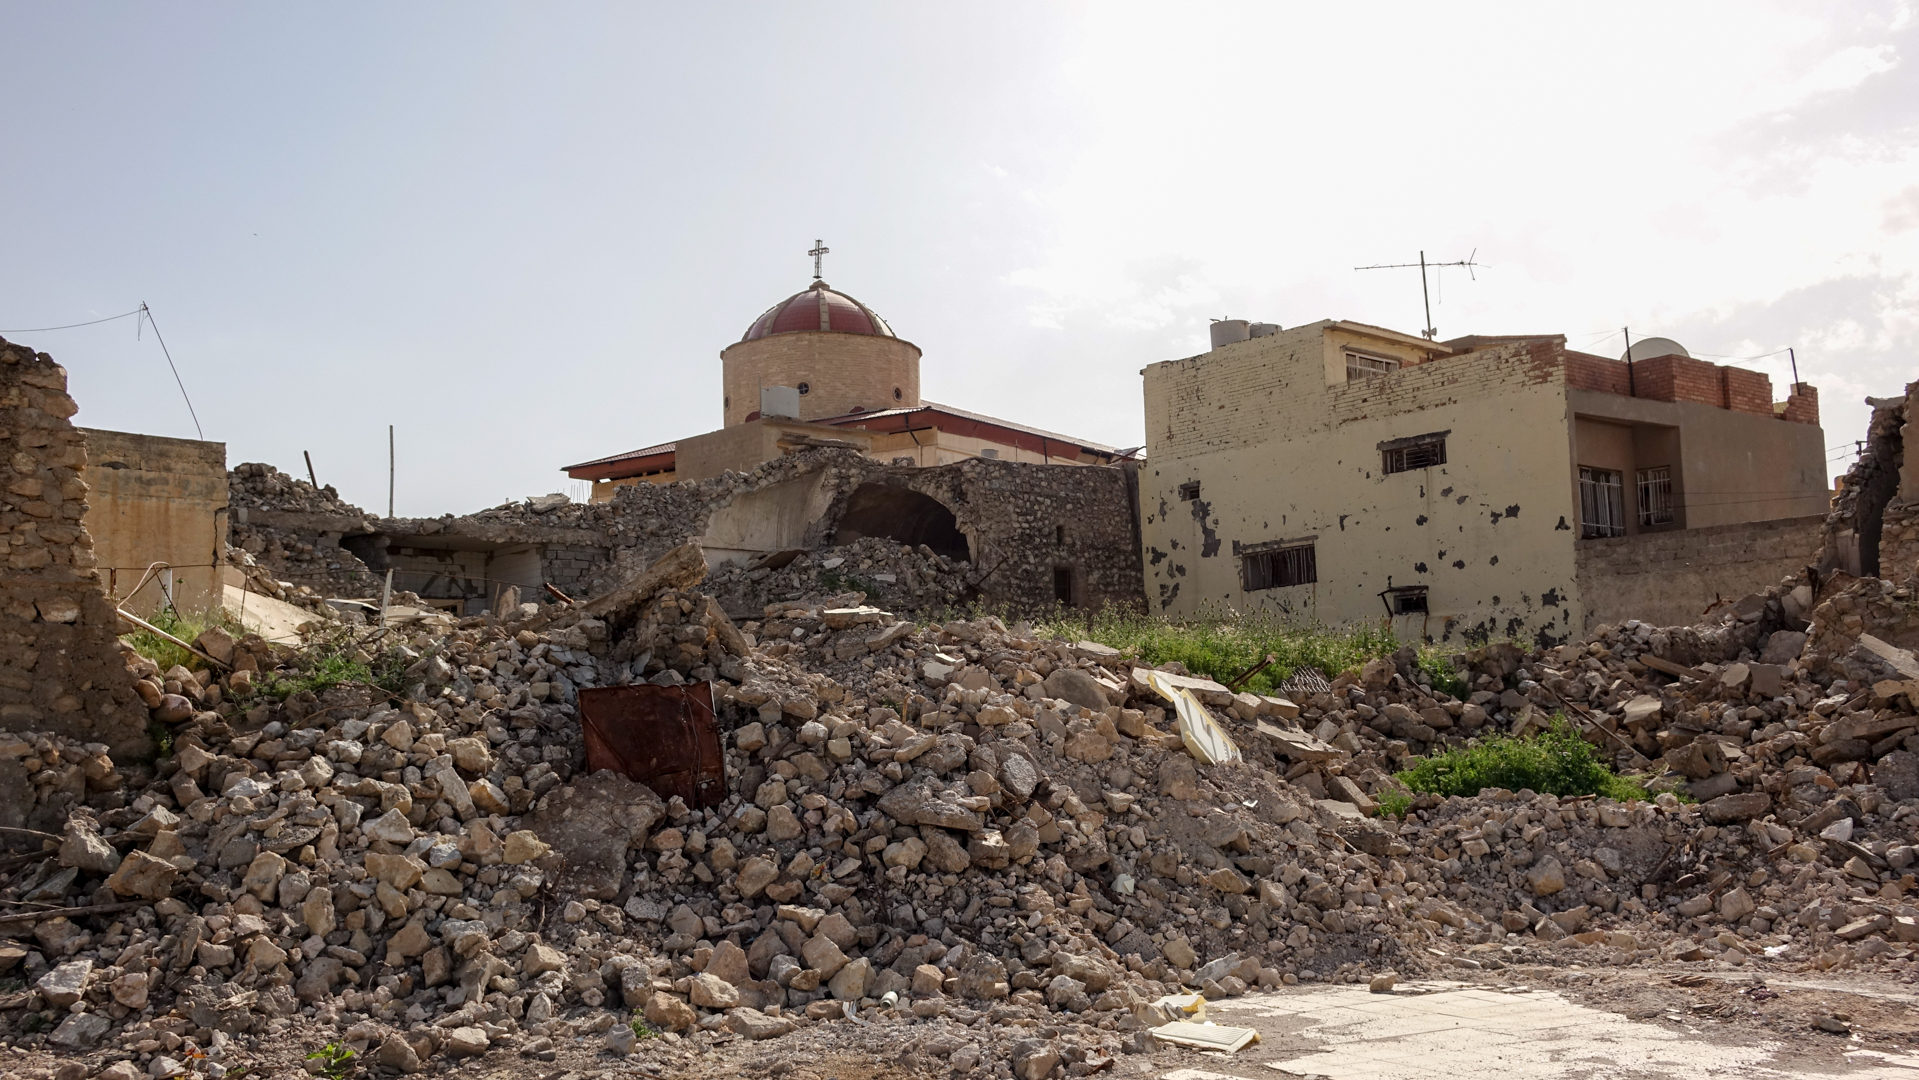 Les ruines du village de Betnaya, au nord de l'Irak. L'église de Mar Qeryaqos est restée debout |© Maurice Page 